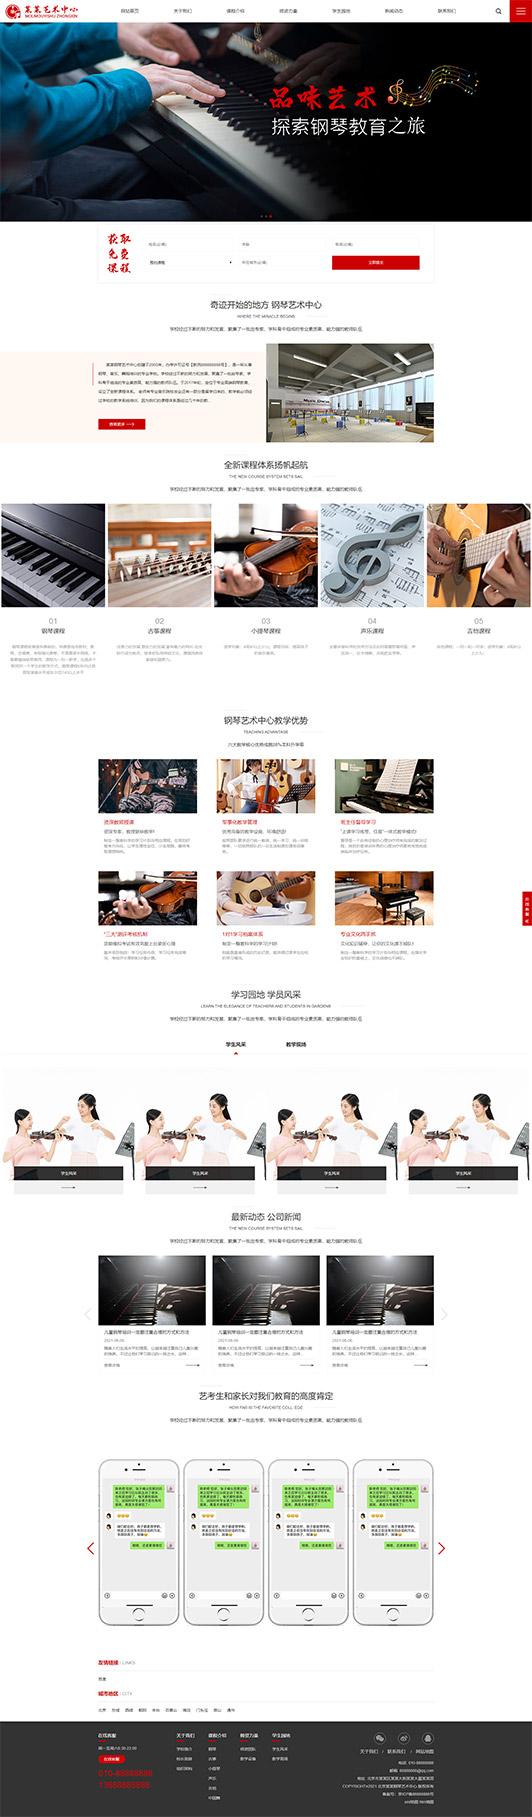 聊城钢琴艺术培训公司响应式企业网站